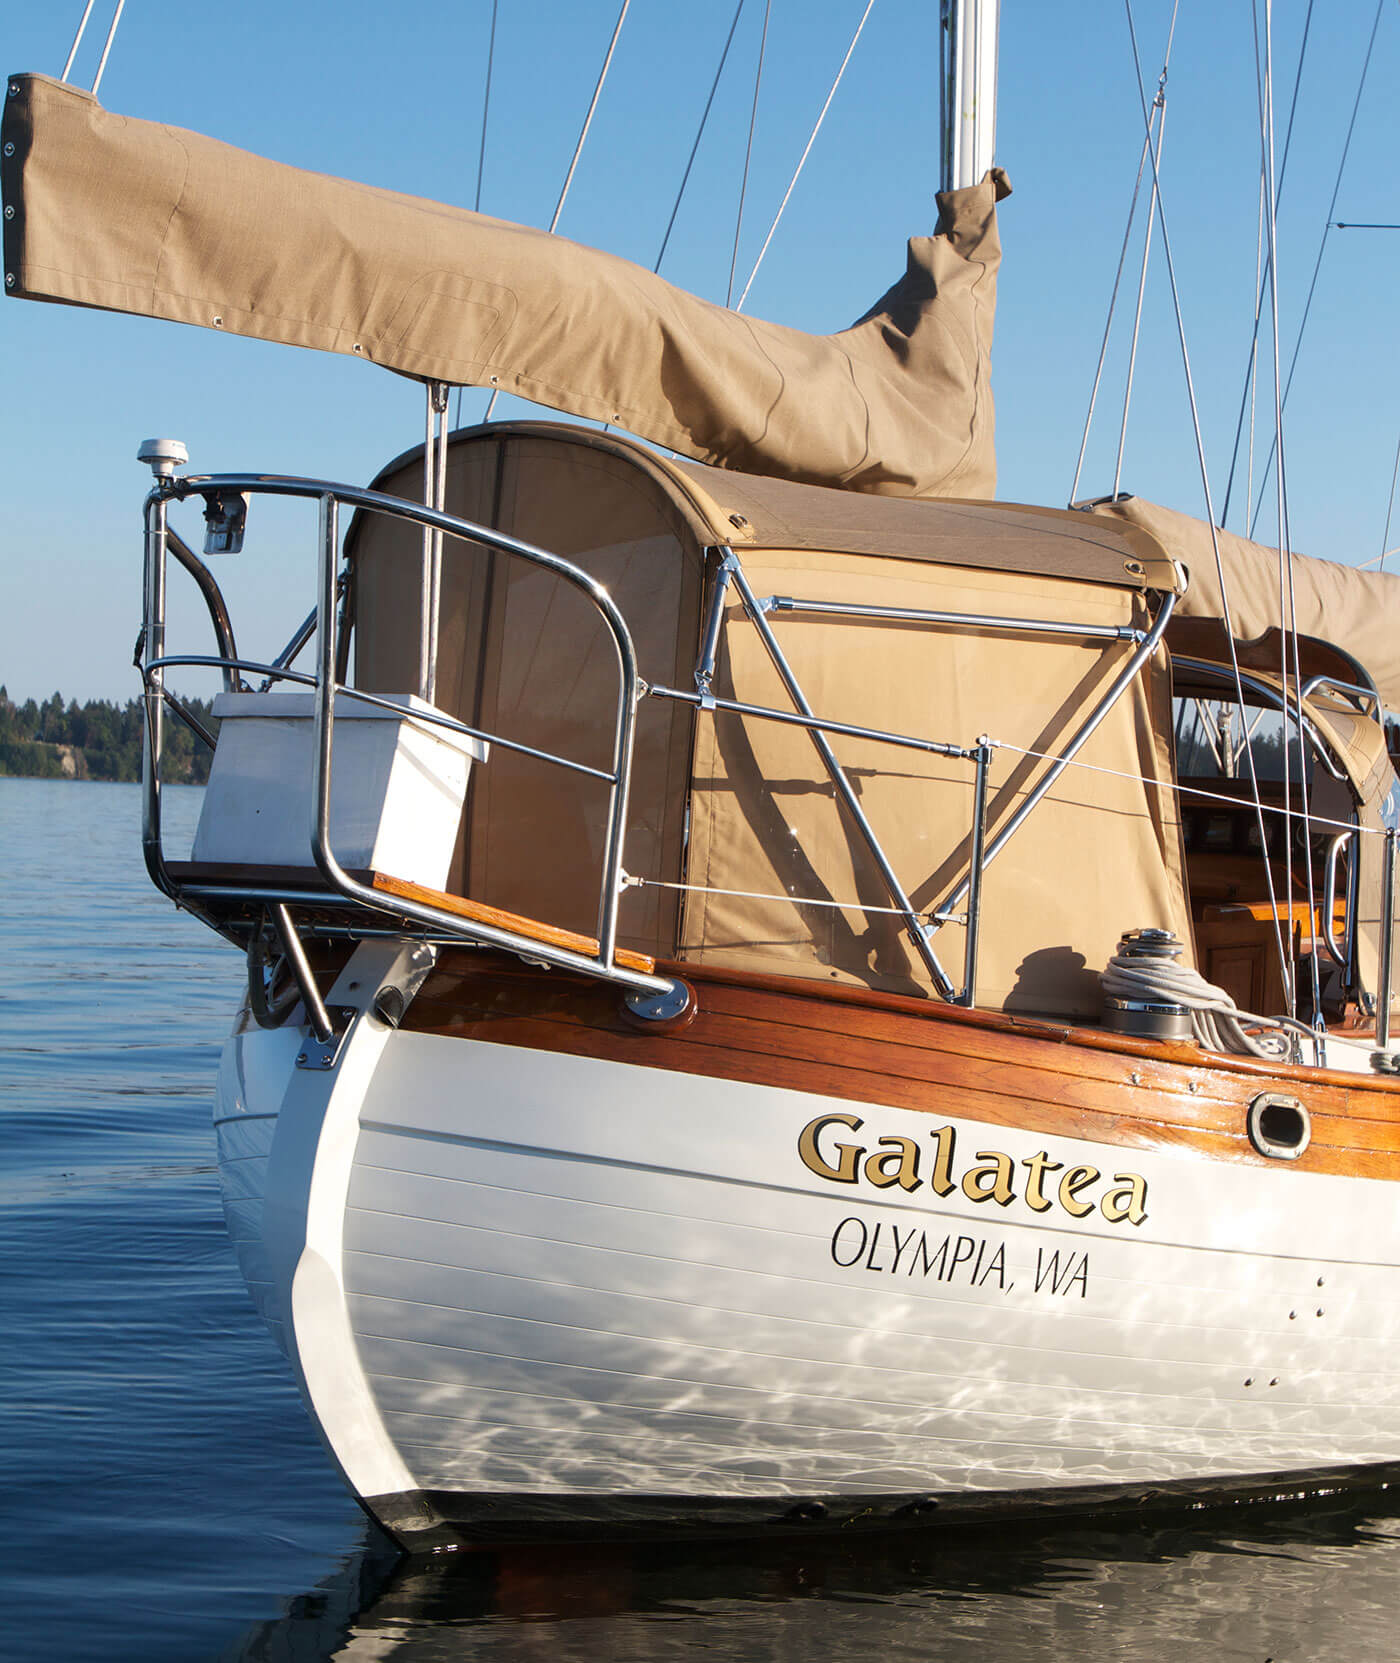 Galatea sailboat featuring sailcover and enclosure made using Sunbrella fabrics